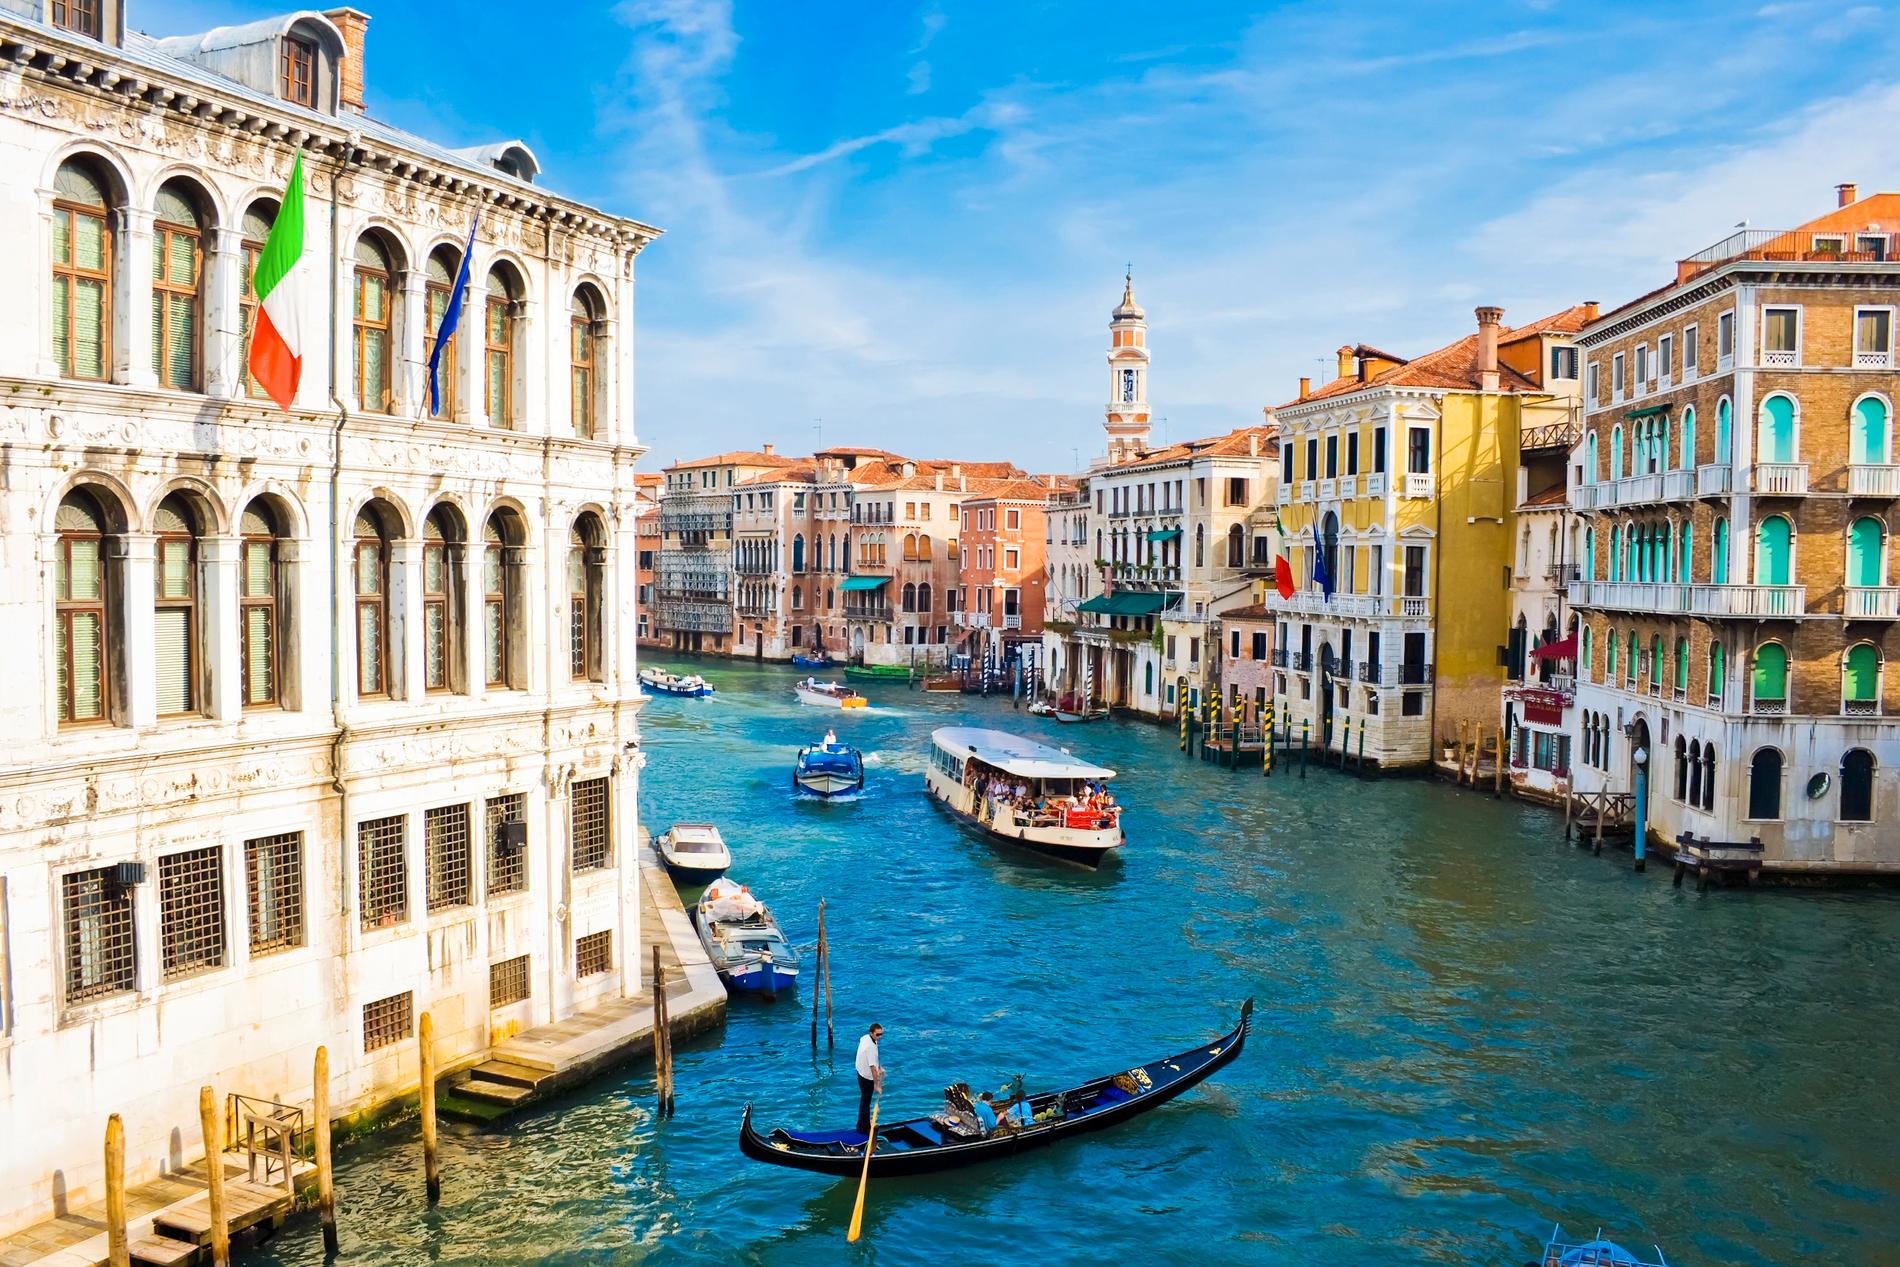 Vill du åka gondol på Canal Grande i Venedig? Nu kommer du att behöva betala entréavgift till stadskärnan. Arkivbild.